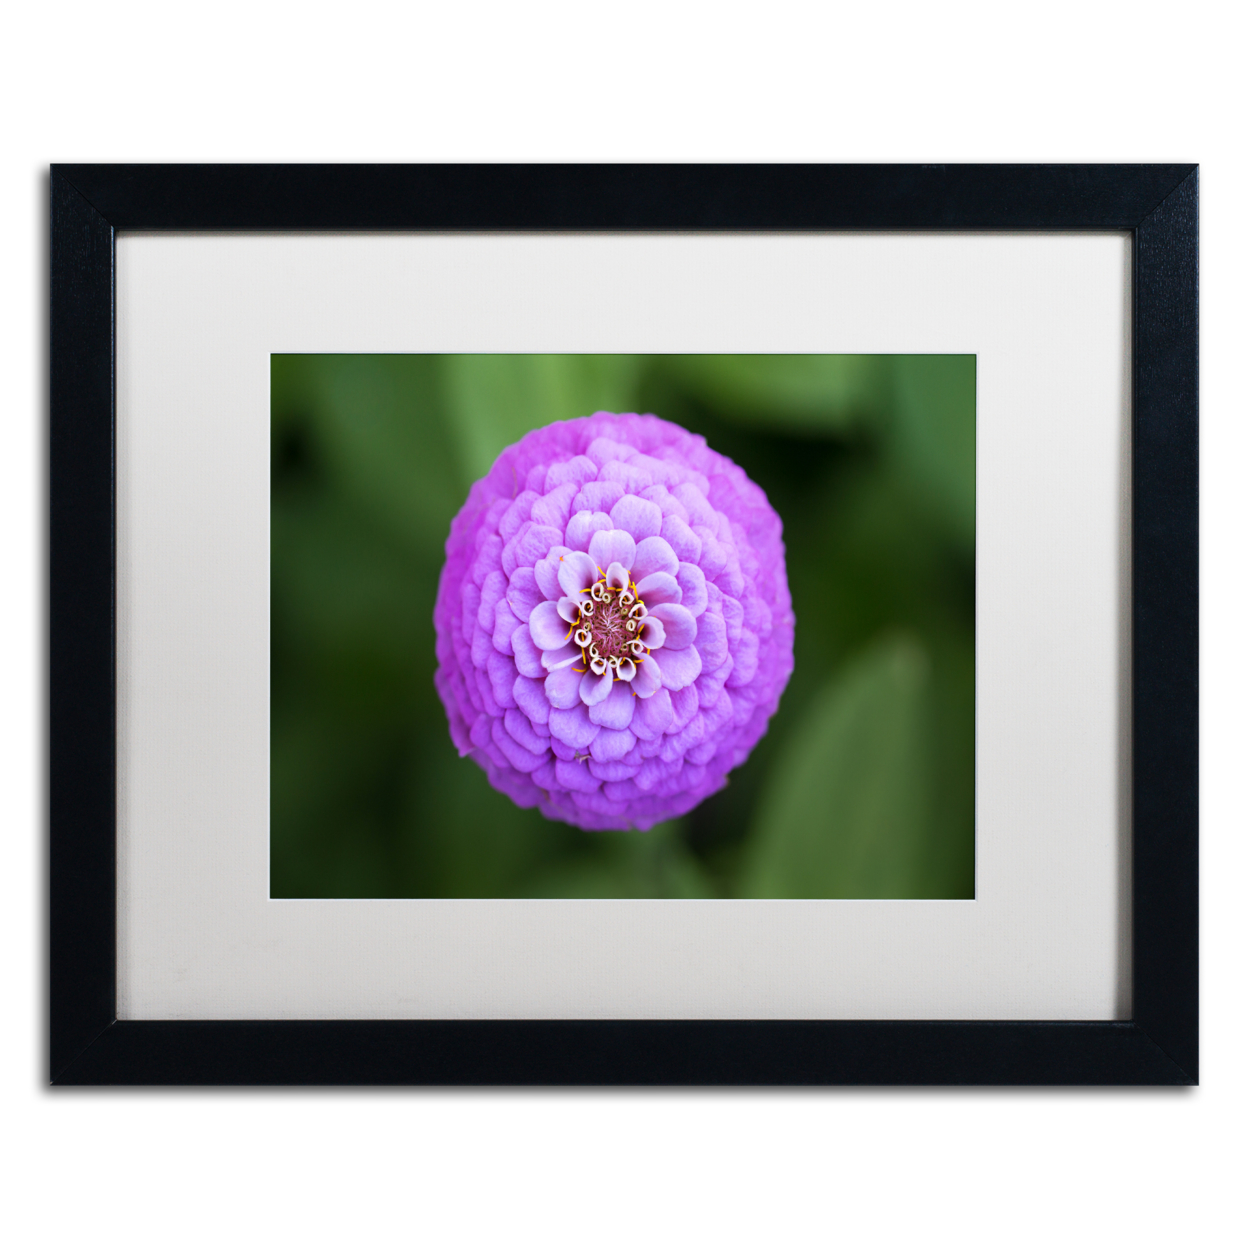 Jason Shaffer 'Purple Flower' Black Wooden Framed Art 18 X 22 Inches